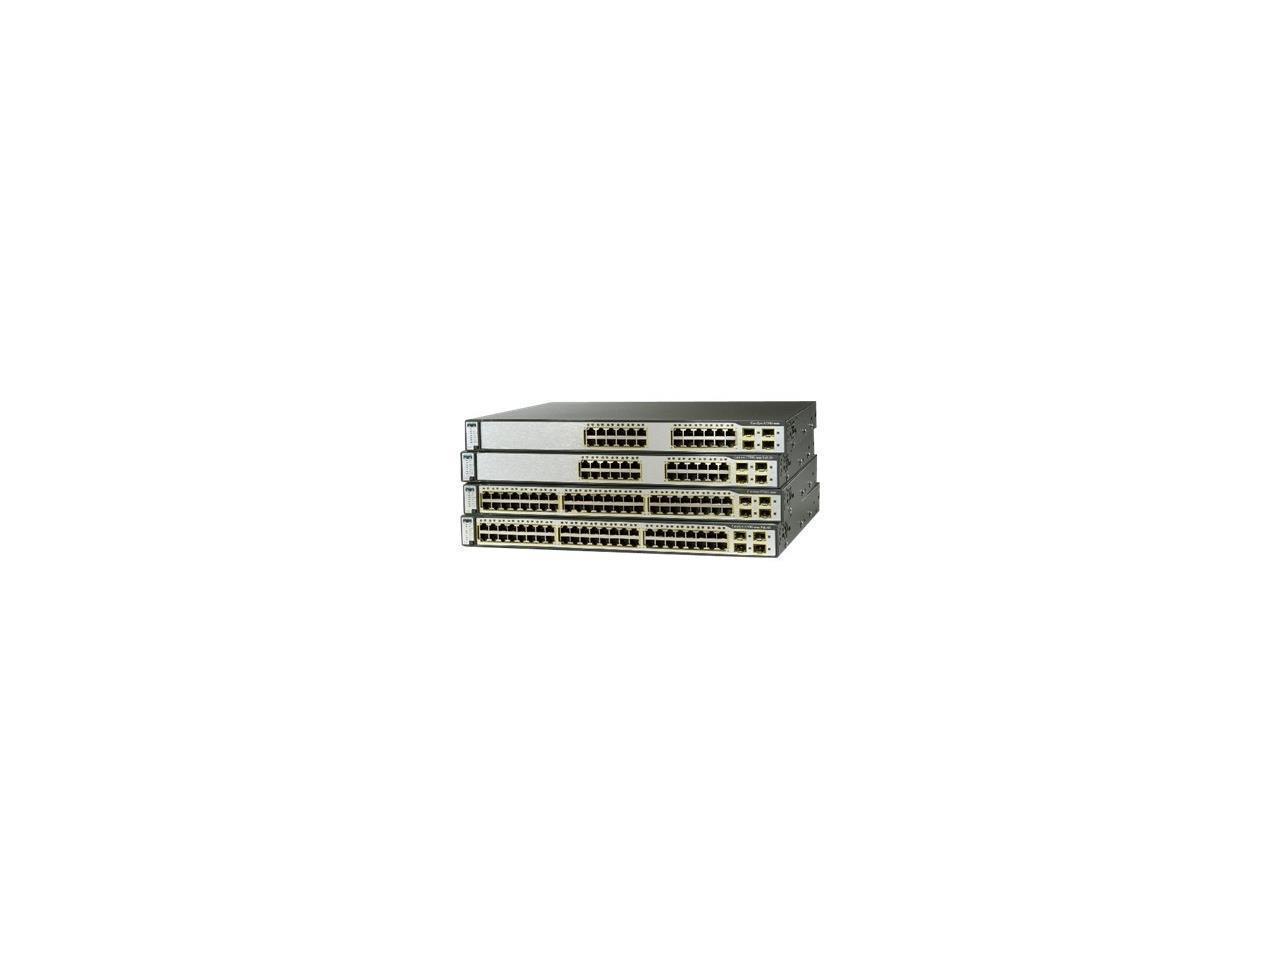 Cisco 3750G Series 24 Port Gigabit Switch, WS-C3750G-24WS-S50